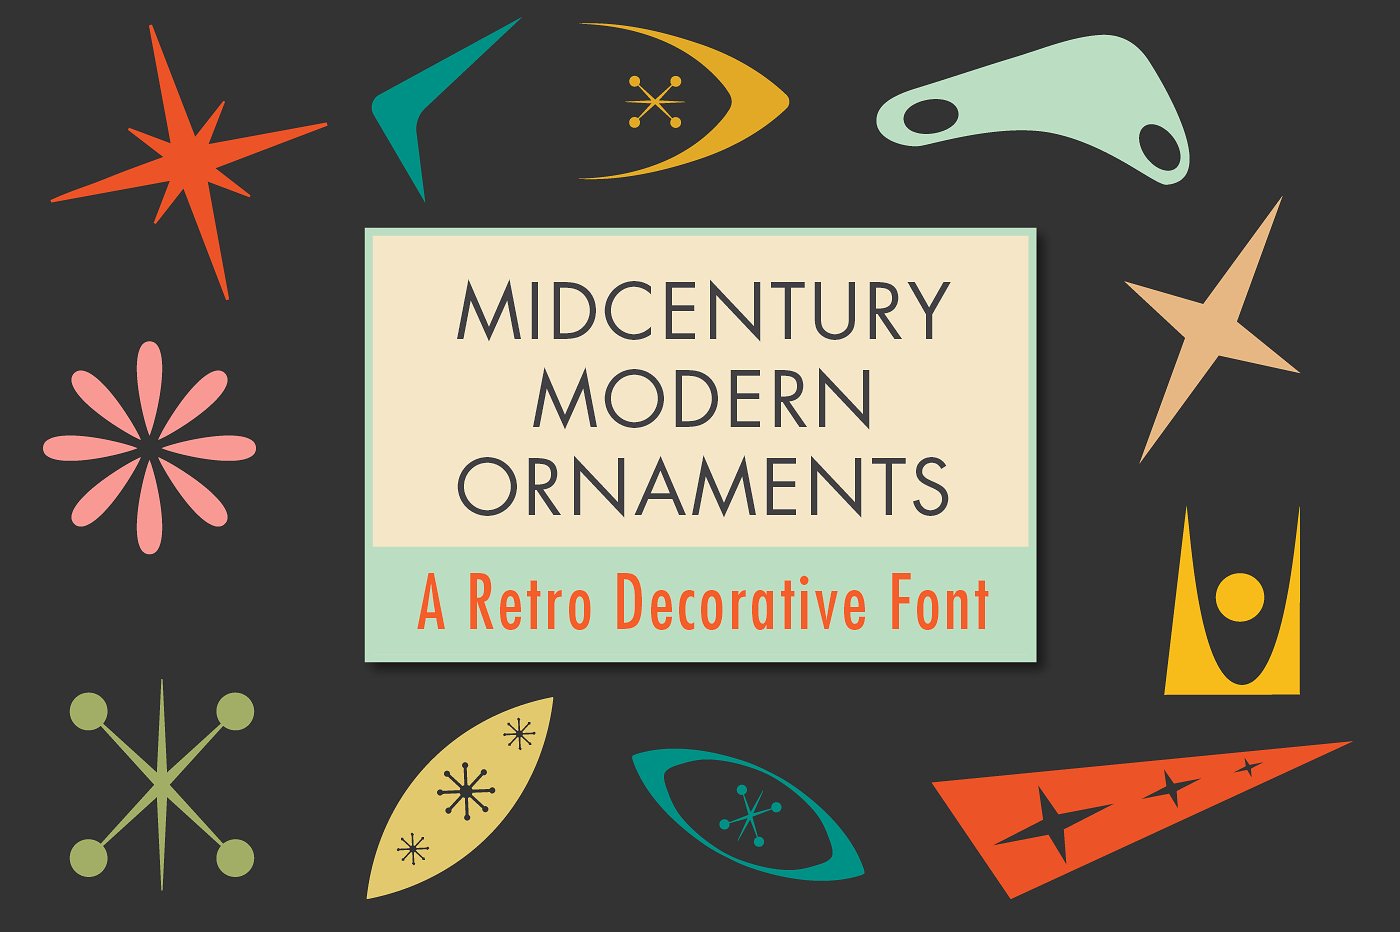 超级复古的中世纪现代装饰字体 Mid-Century Modern Ornaments Font插图